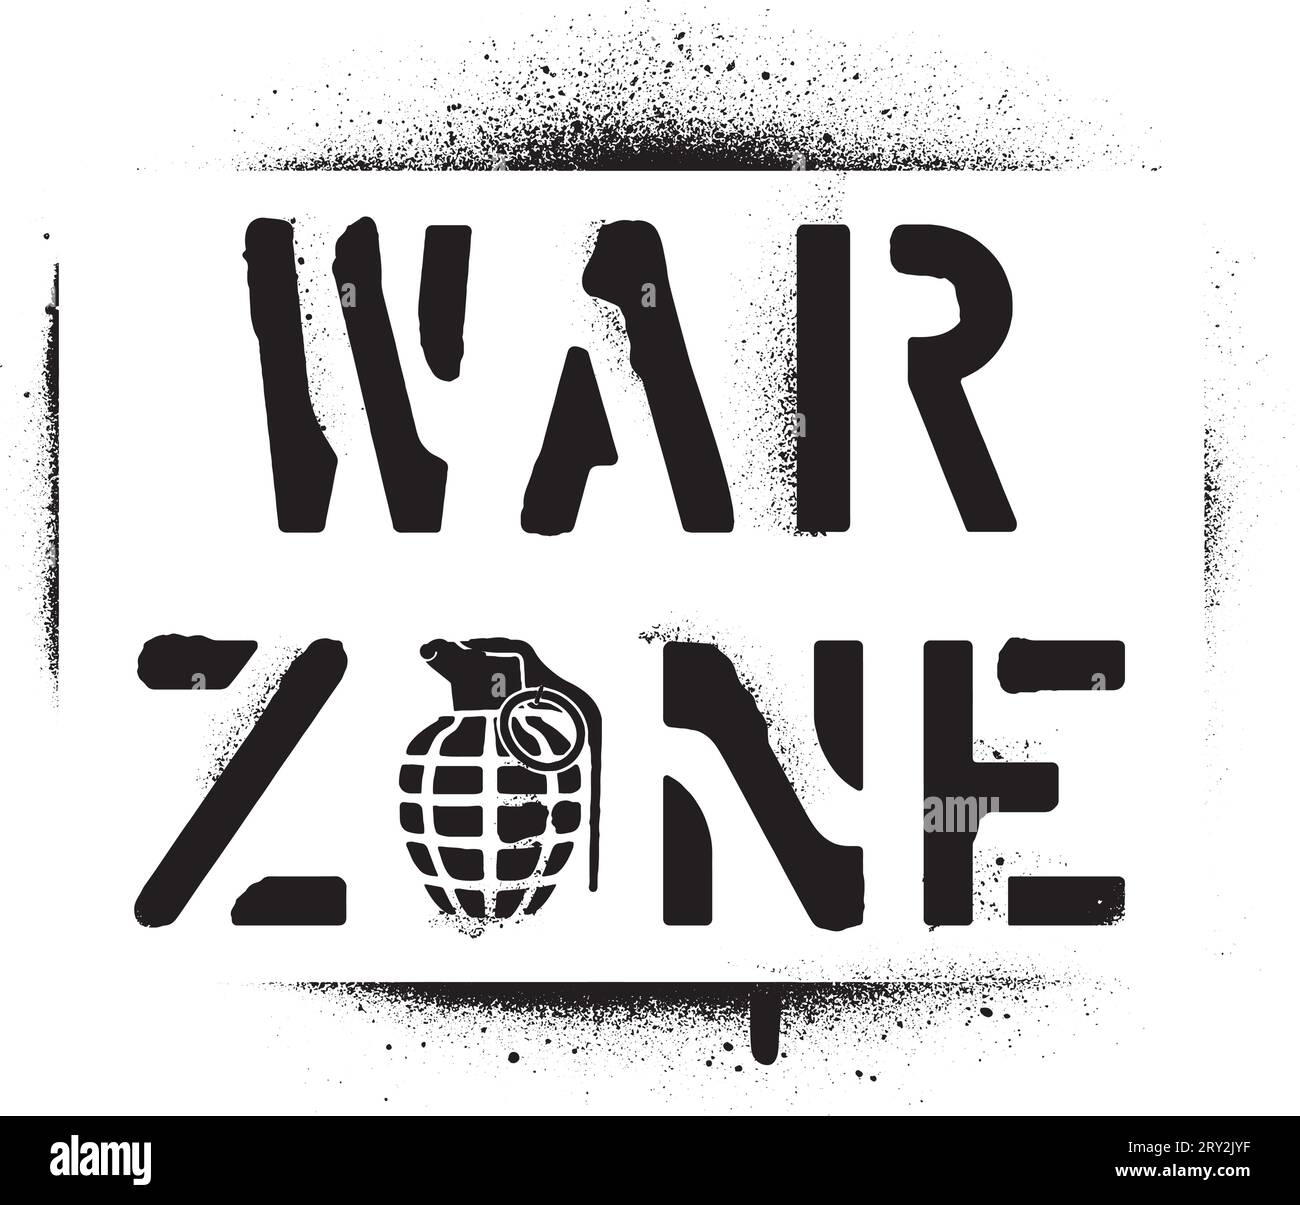 Messaggio di avvertimento "zona di guerra" e silhouette della granata a mano. Stencil per graffiti spray. Illustrazione Vettoriale